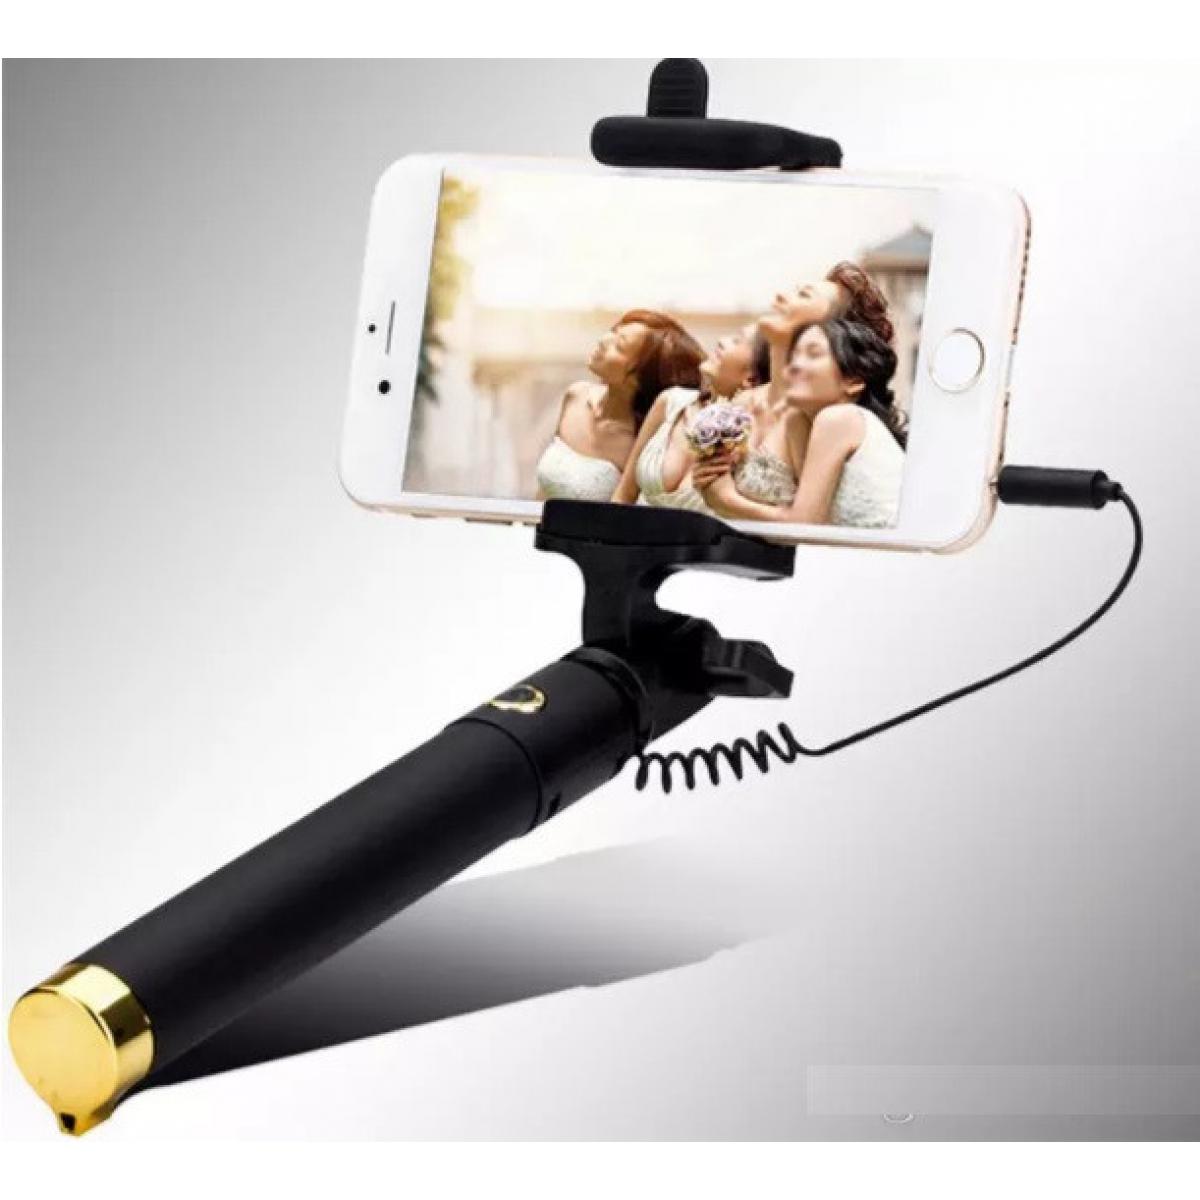 Shot - Perche Selfie Metal pour WIKO View 4 Lite Smartphone avec Cable Jack Selfie Stick Android IOS Reglable Bouton Photo (OR) - Autres accessoires smartphone